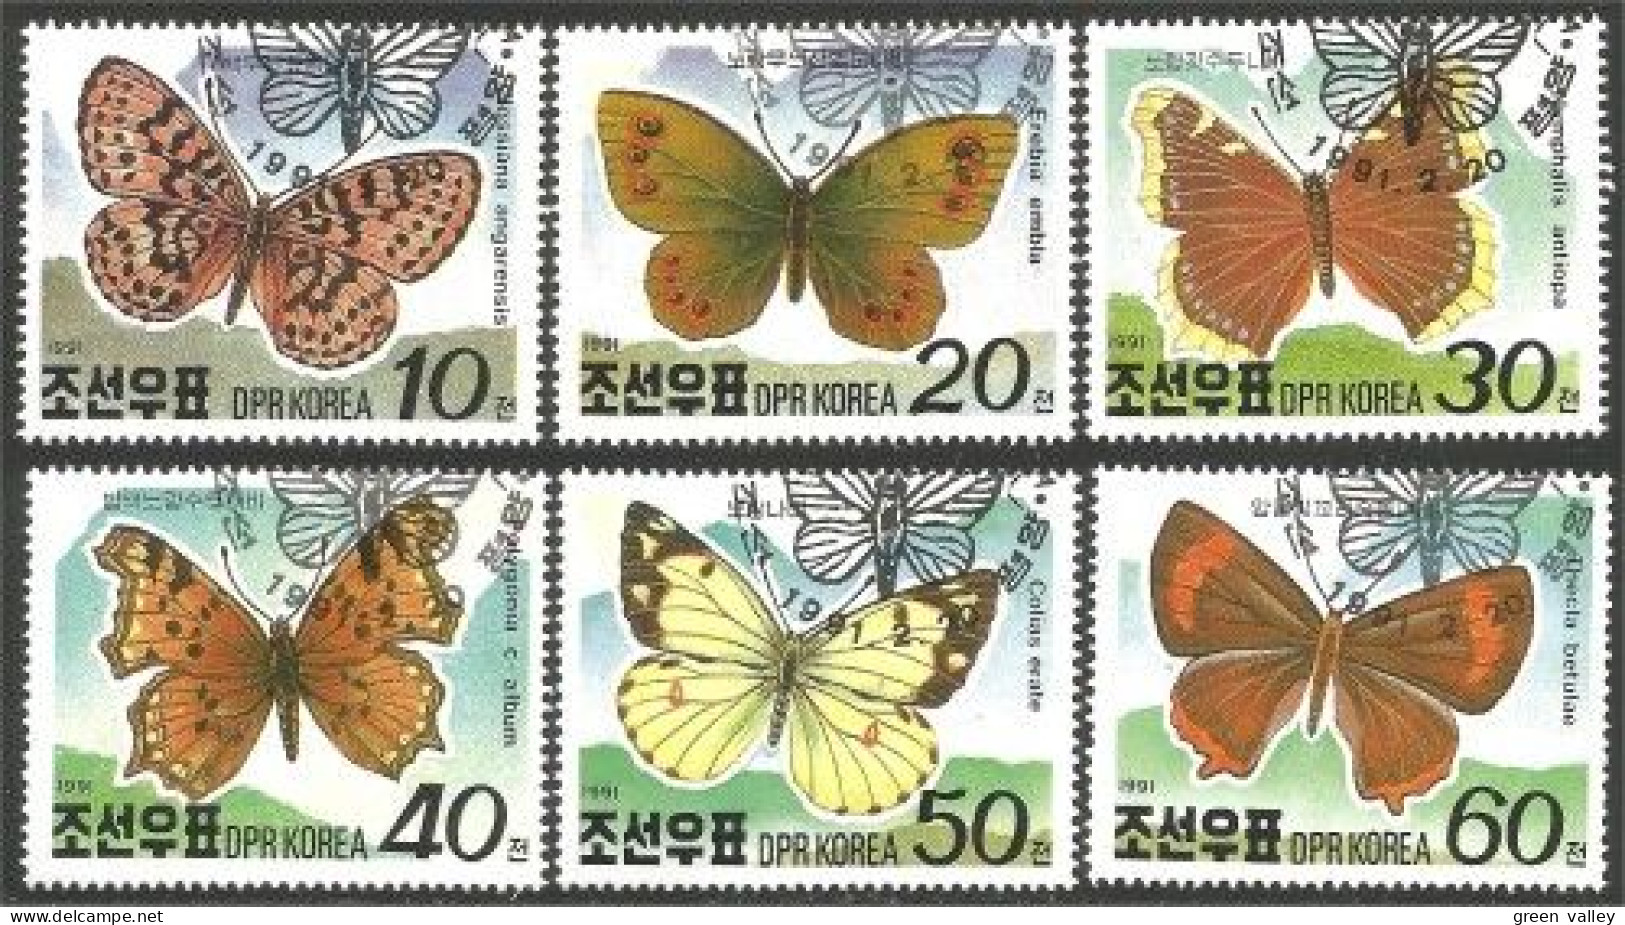 IN-20 Korea Papillon Butterfly Butterflies Farfalla Mariposa Schmetterling Vlinder - Butterflies